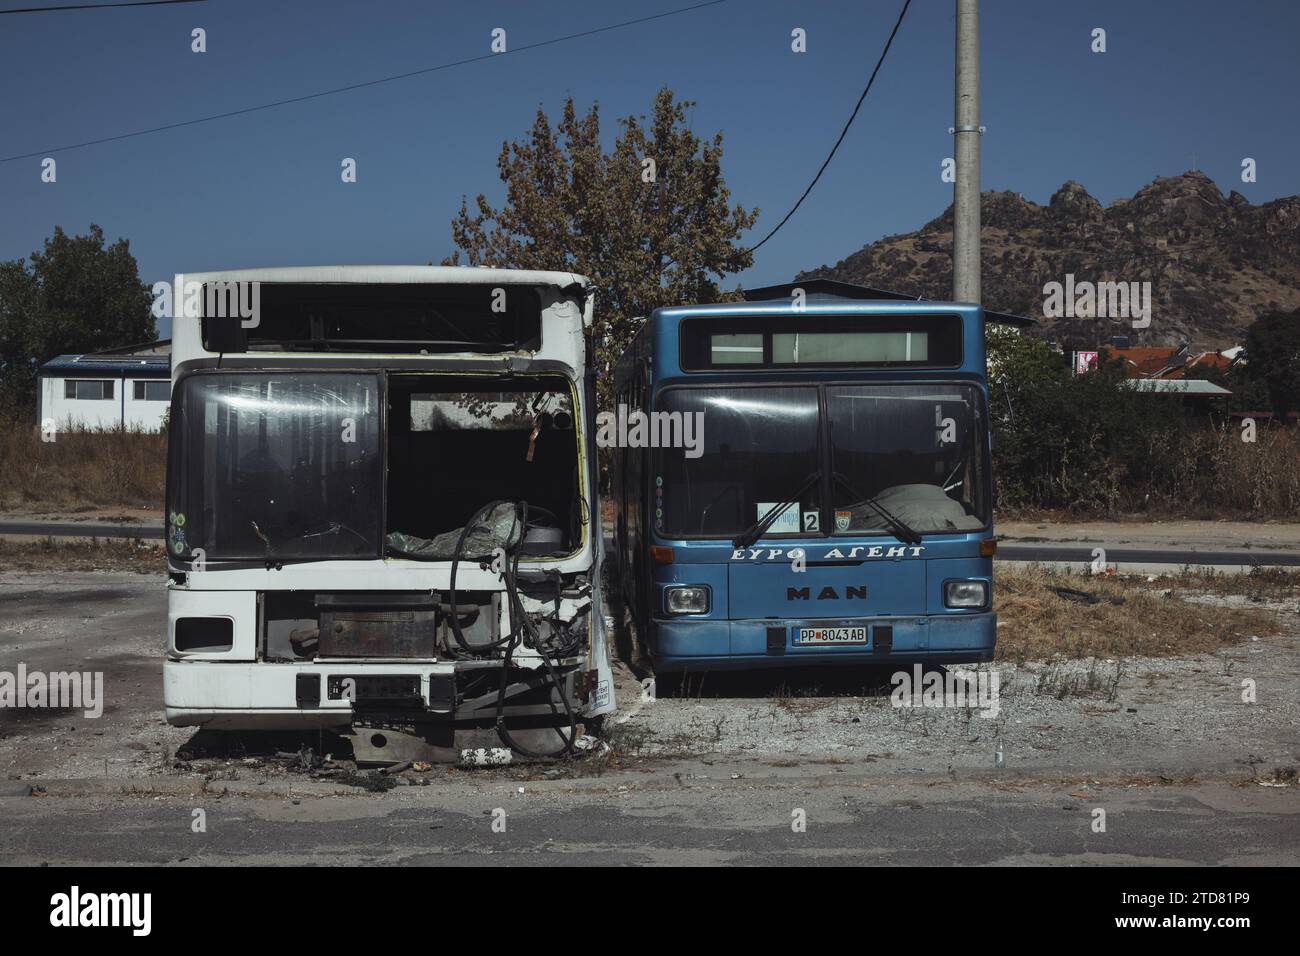 Verlassene und kaputte Busse am Stadtrand von Prilep in Nordmakedonien. Die Busse sind eindeutig unbrauchbar. Berge und blauer Himmel im Hintergrund. Stockfoto